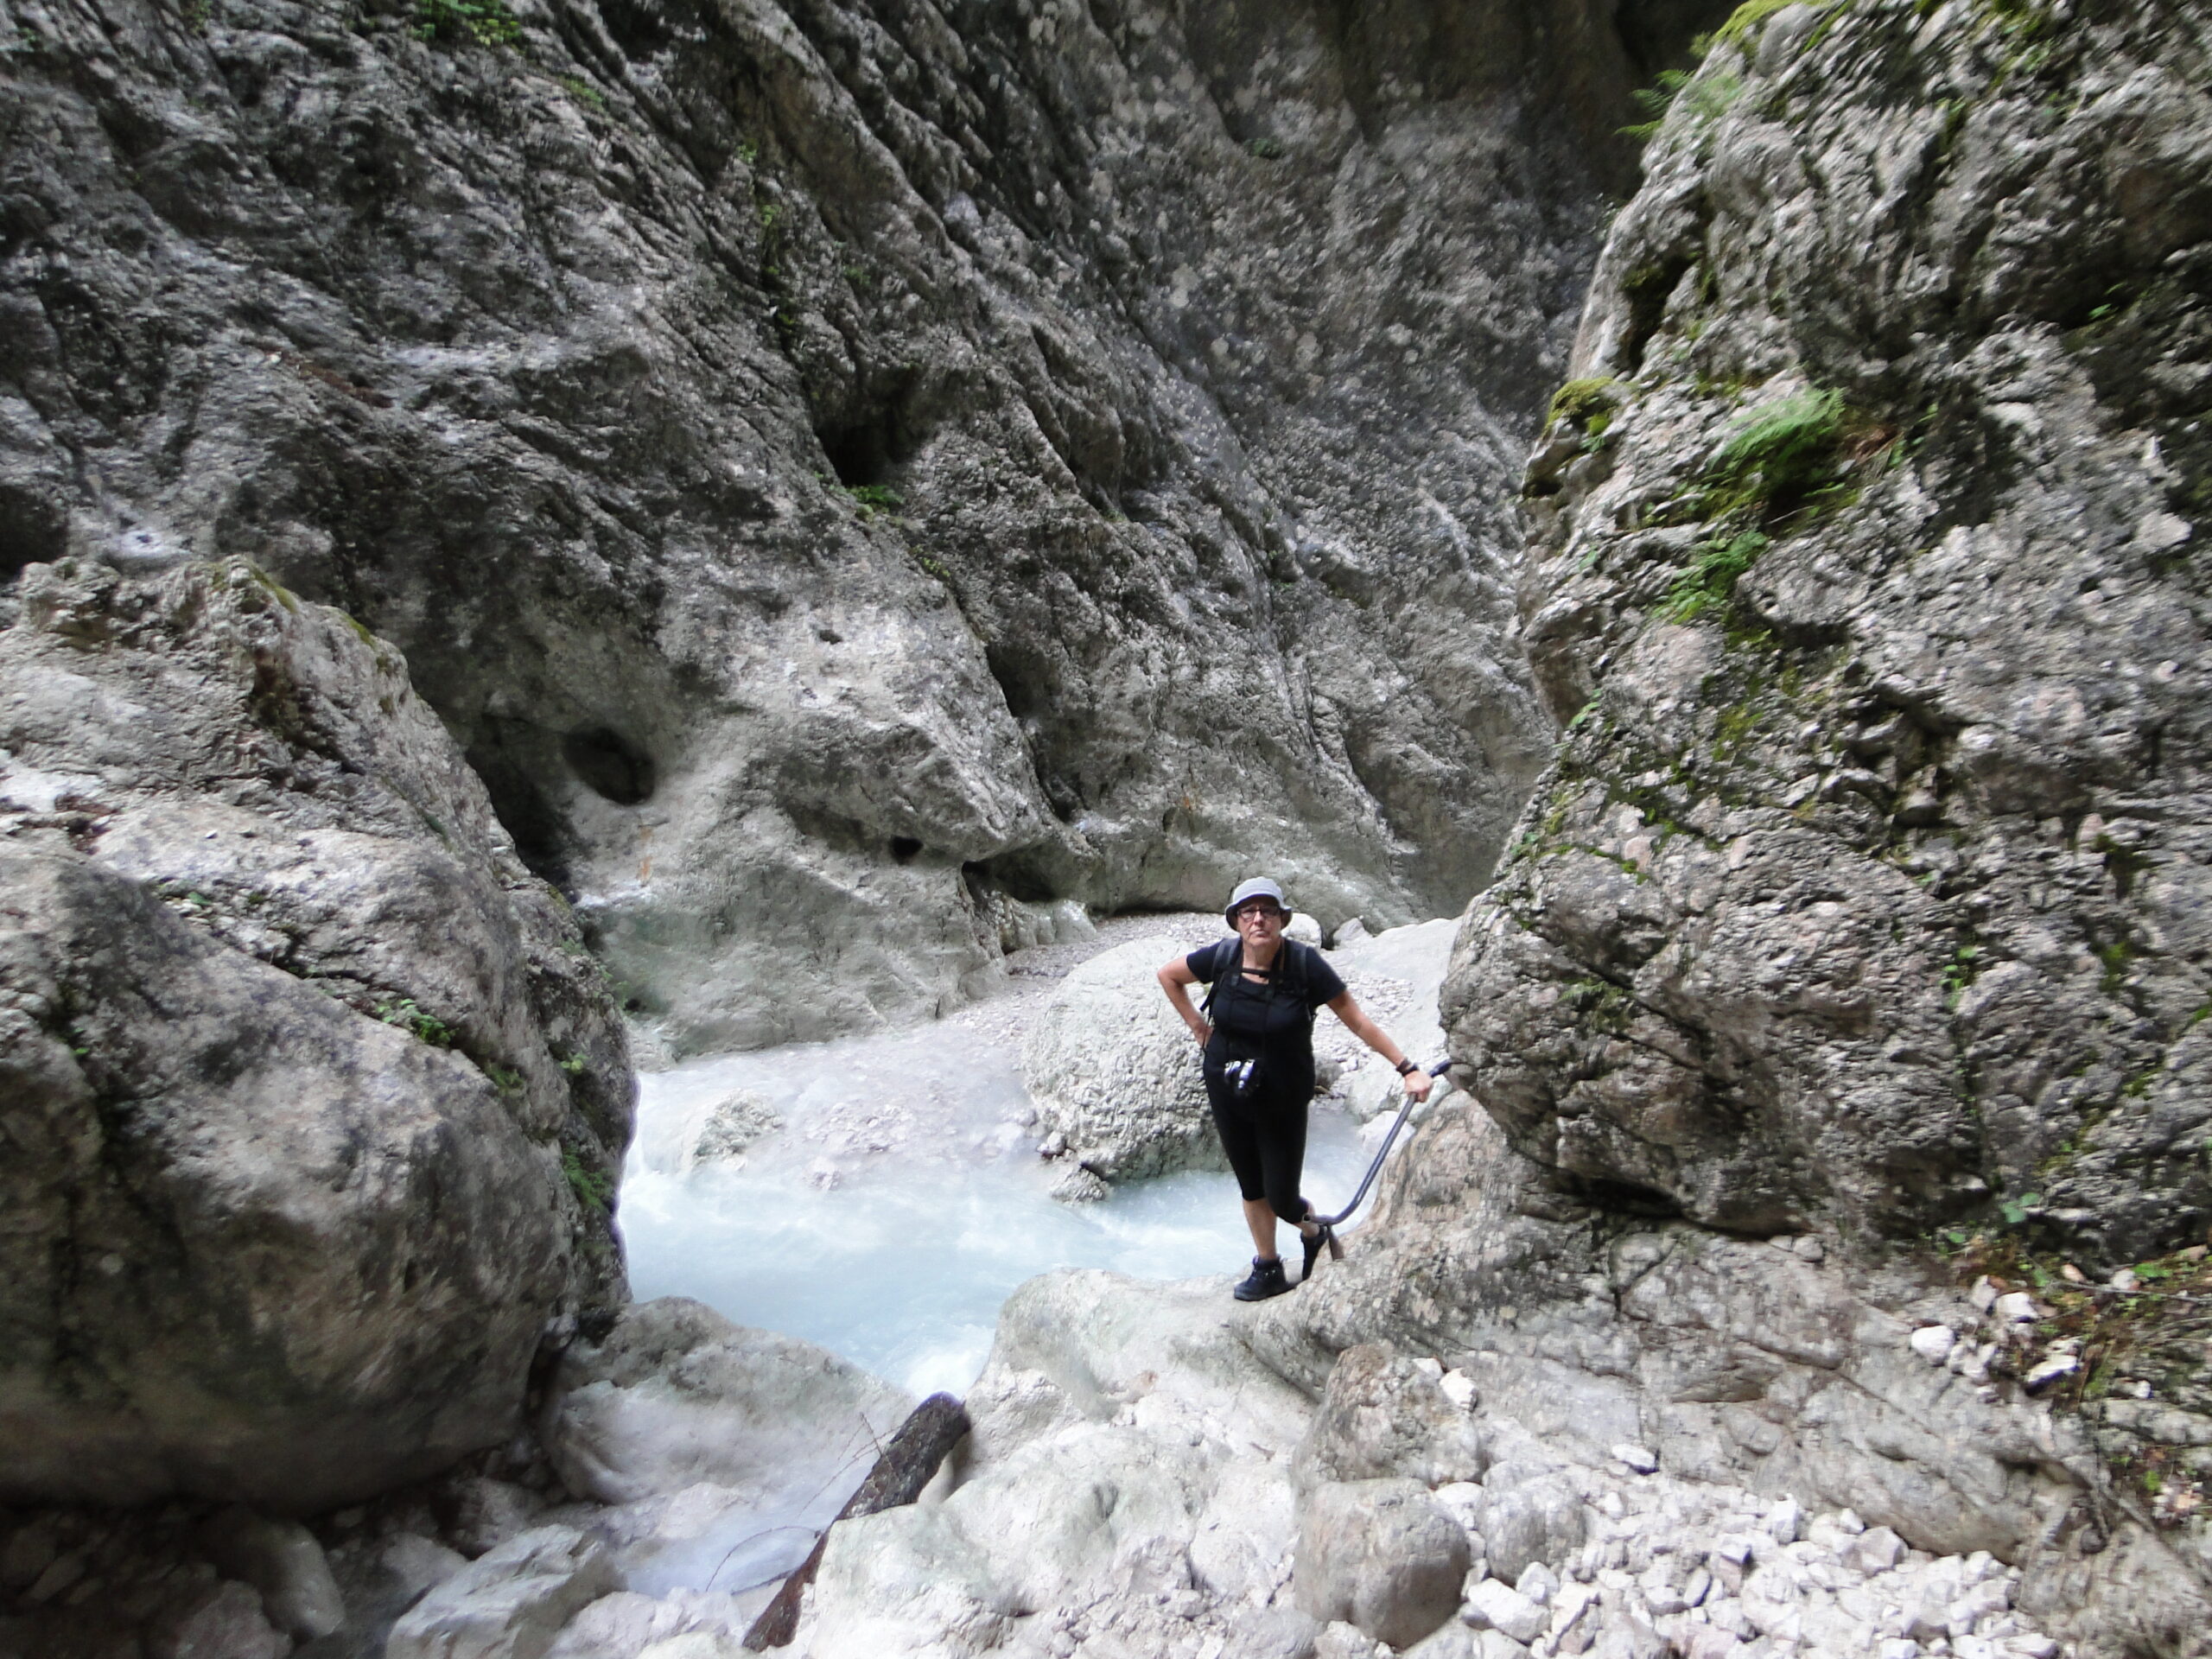 Magdalena Humbert Pons se encuentra en la Val Òten, cerca de Cortina d´Ampezzo, al norte de Italia. Es un cerrado barranco con escarpadas laderas de piedra y un río de aguas bravas al fondo. Ella aparece de pie muy cerca de agua, con ropa oscura y sombrero, agarrada a una especie de cable.